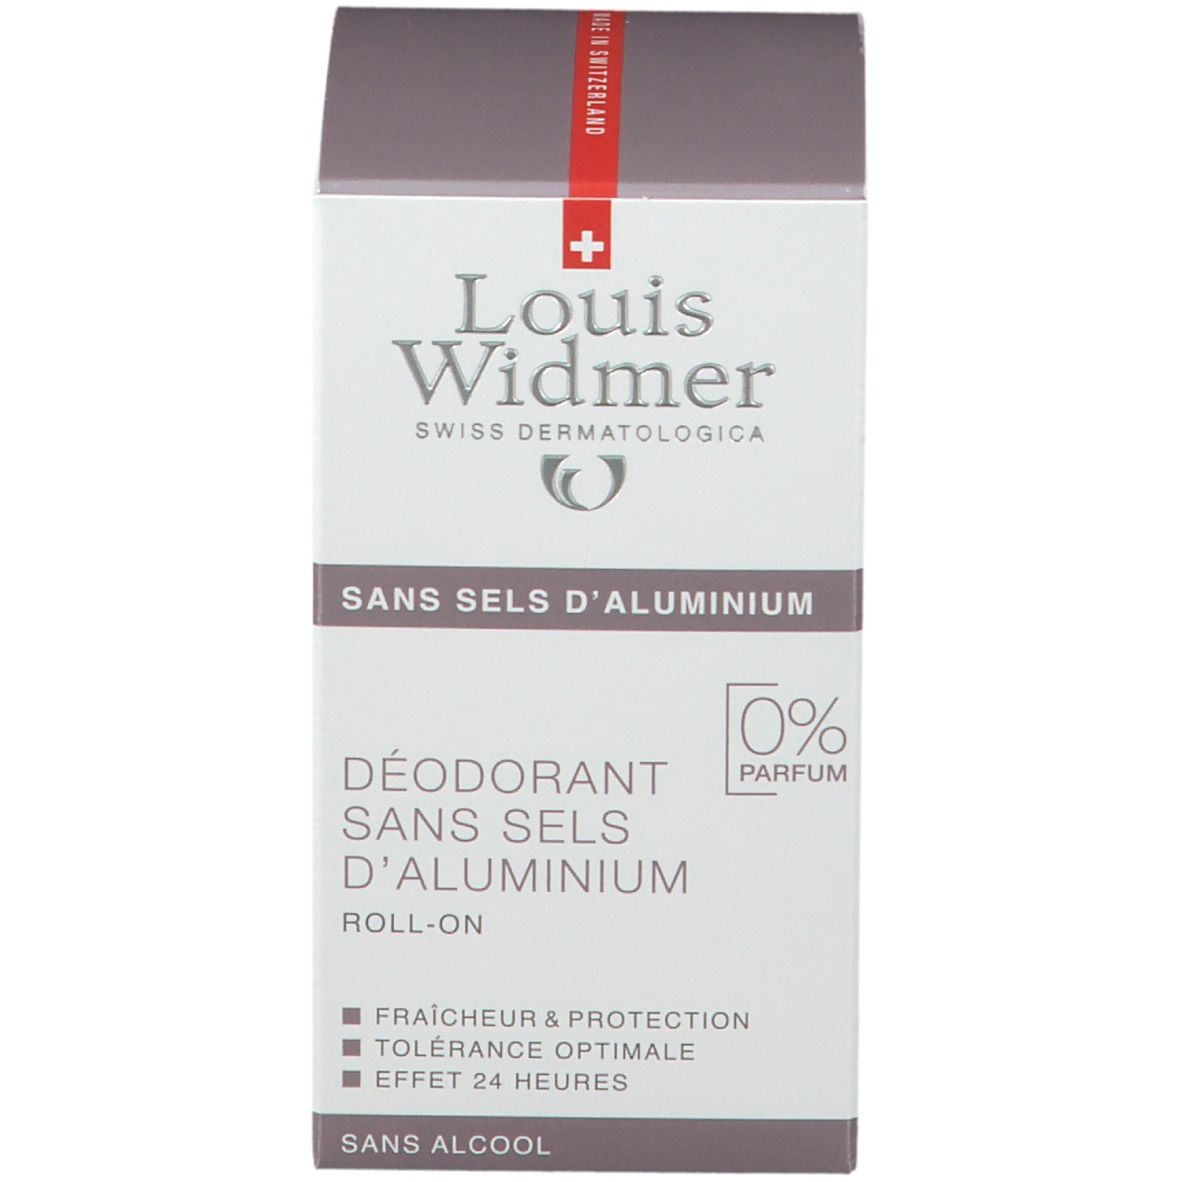 Louis Widmer Deodorant ohne Aluminium-Salze Roll-on unparfümiert